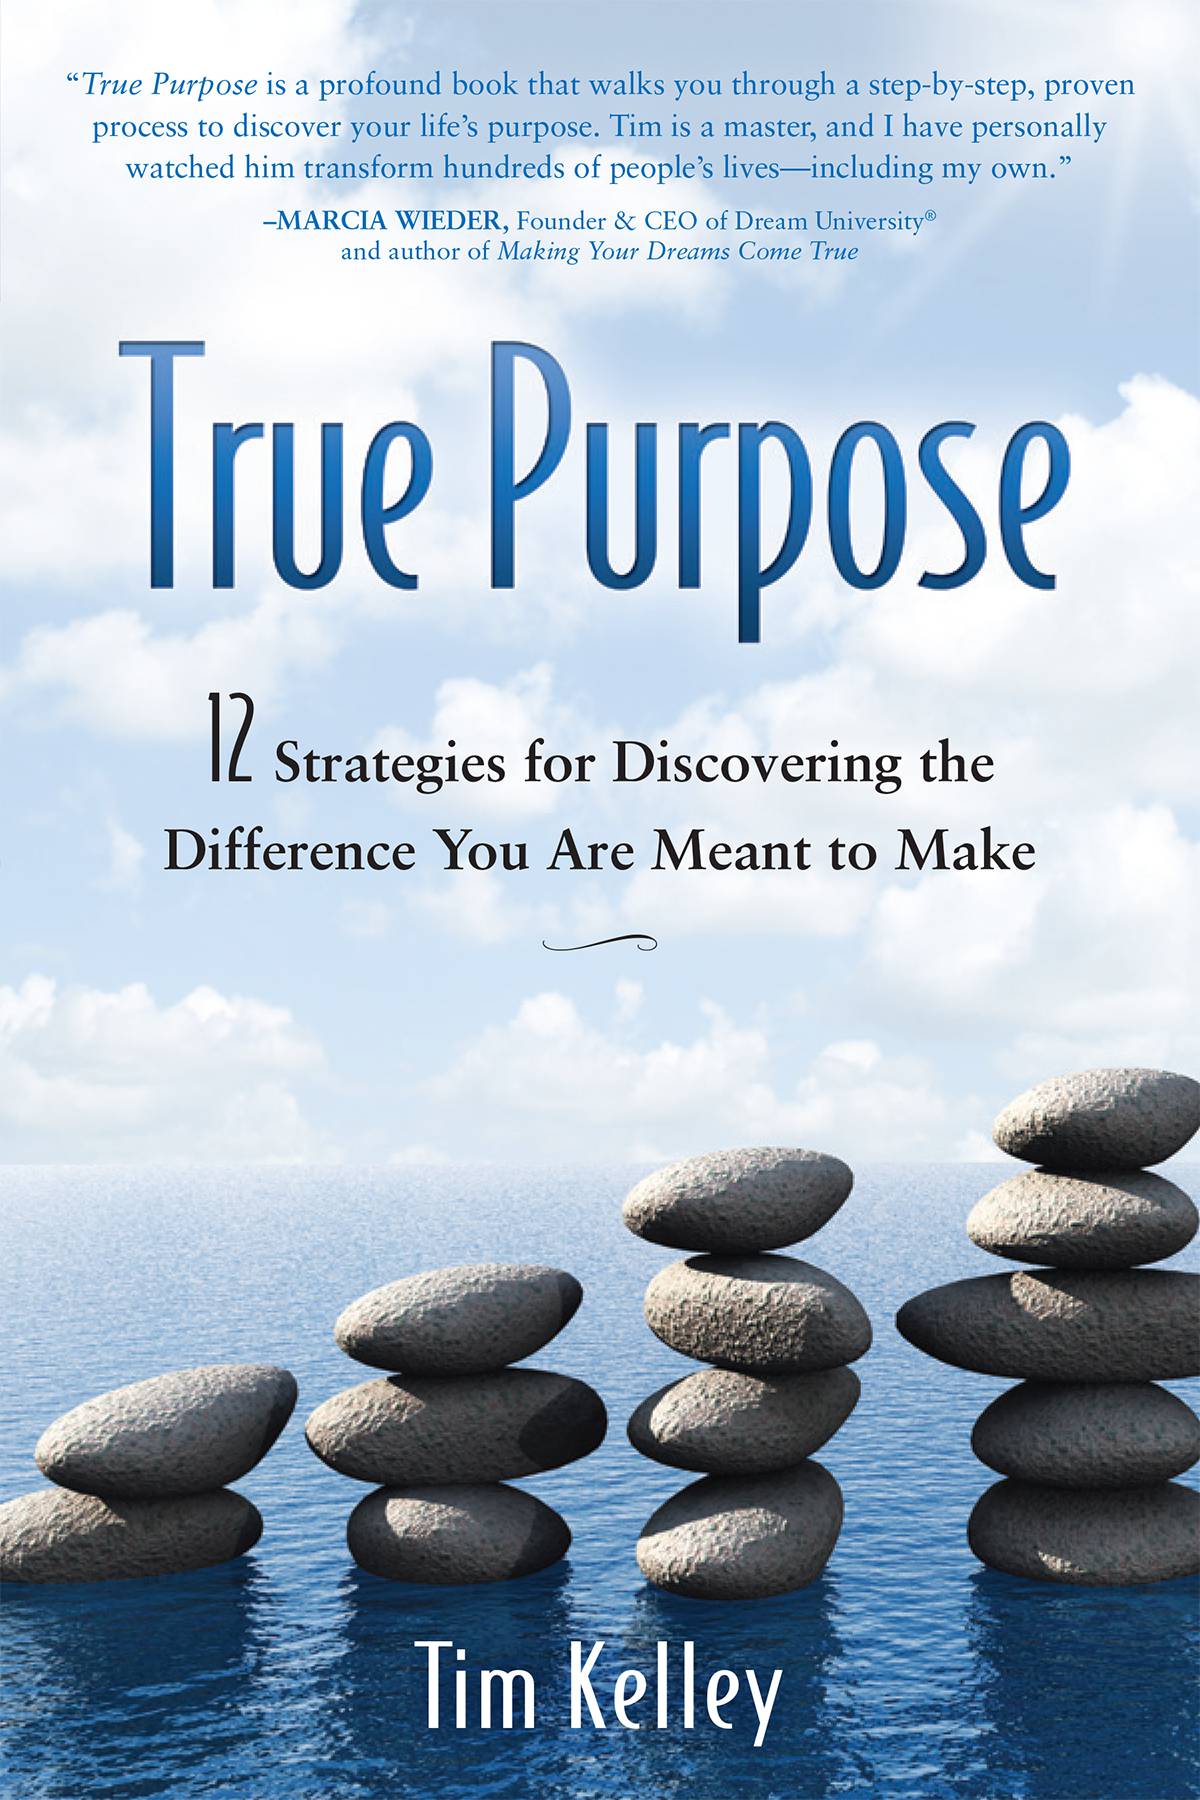 truepurpose-book-cover